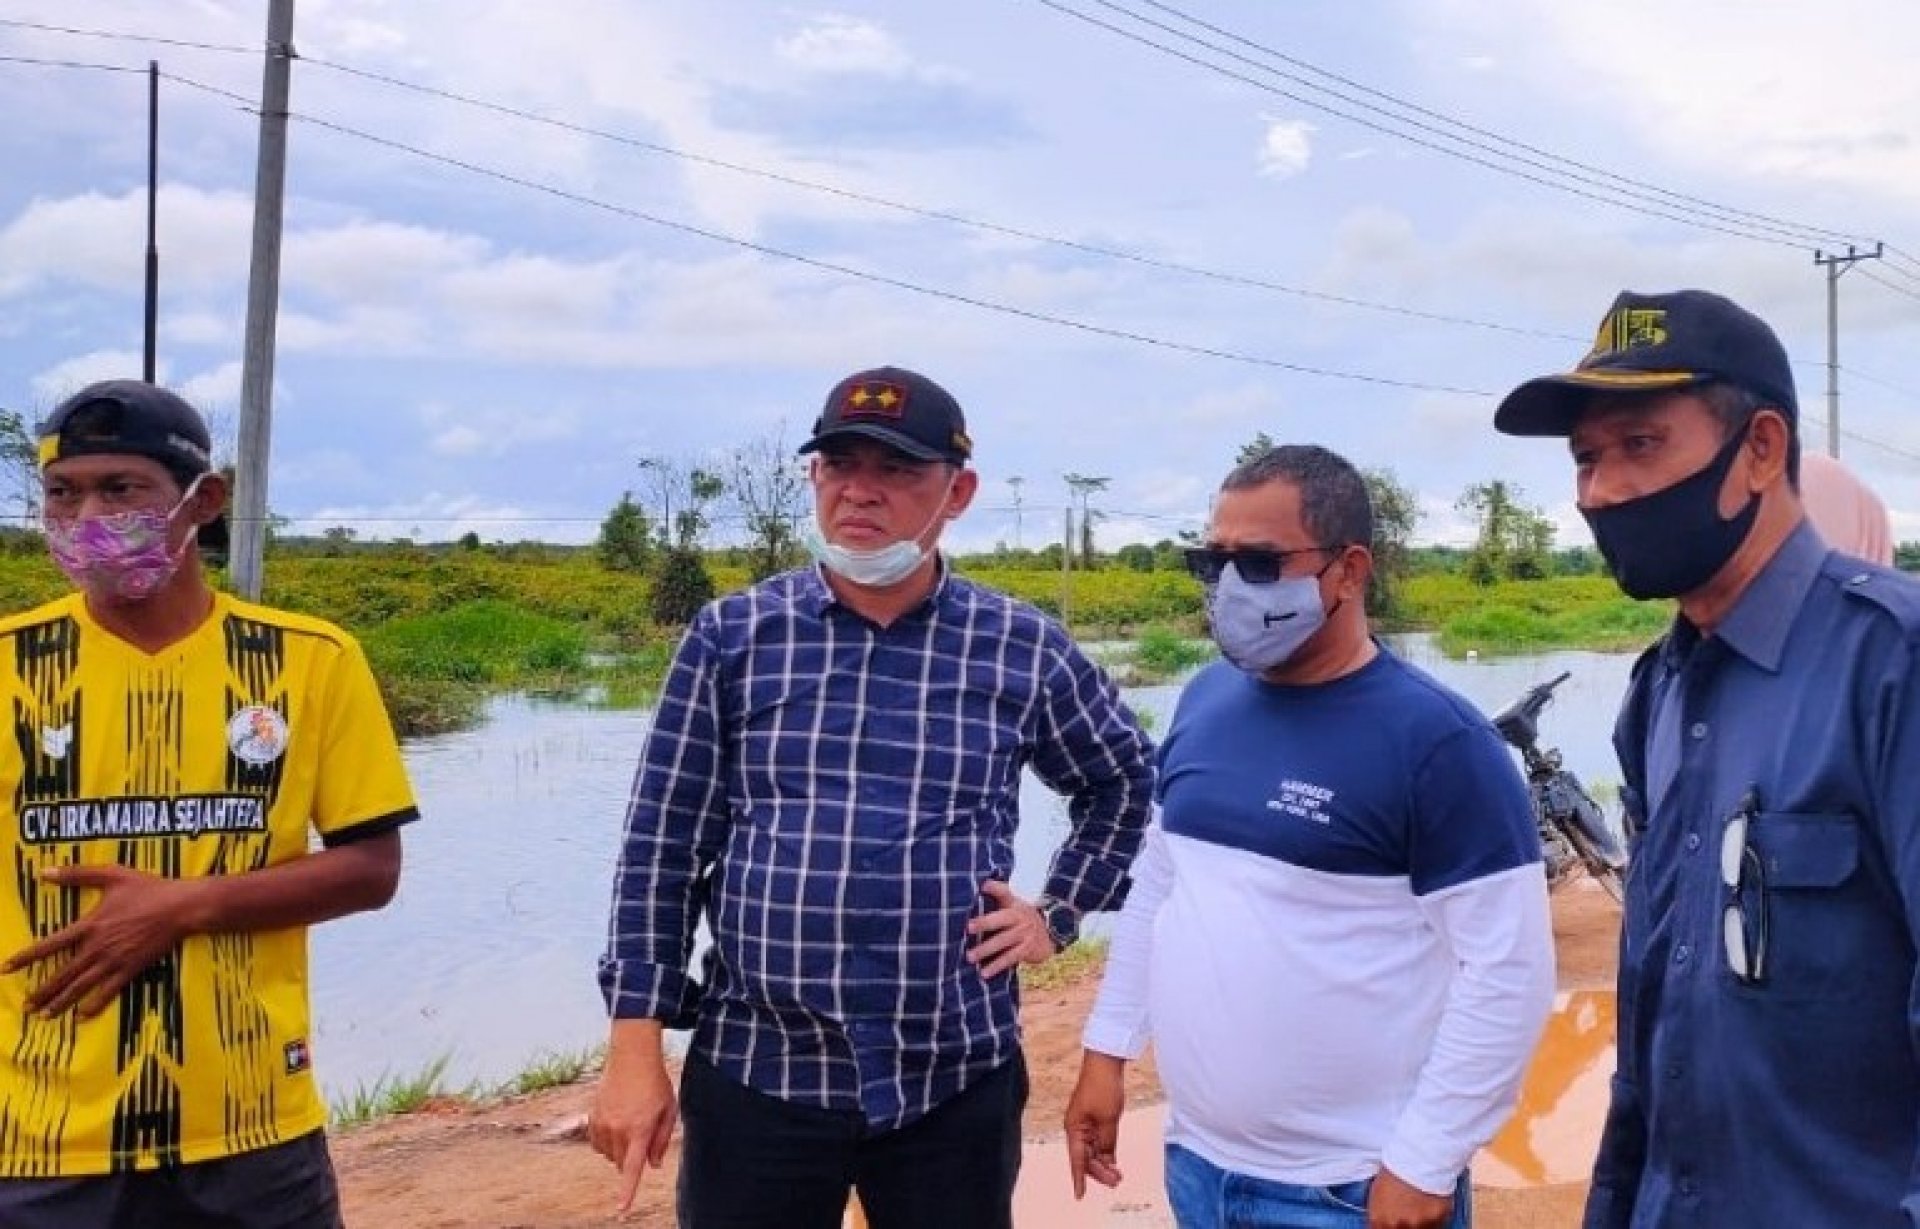 Plt. Gubernur Kalteng Tinjau Banjir di Ruas Jalan Pangkalan Bun-Kolam